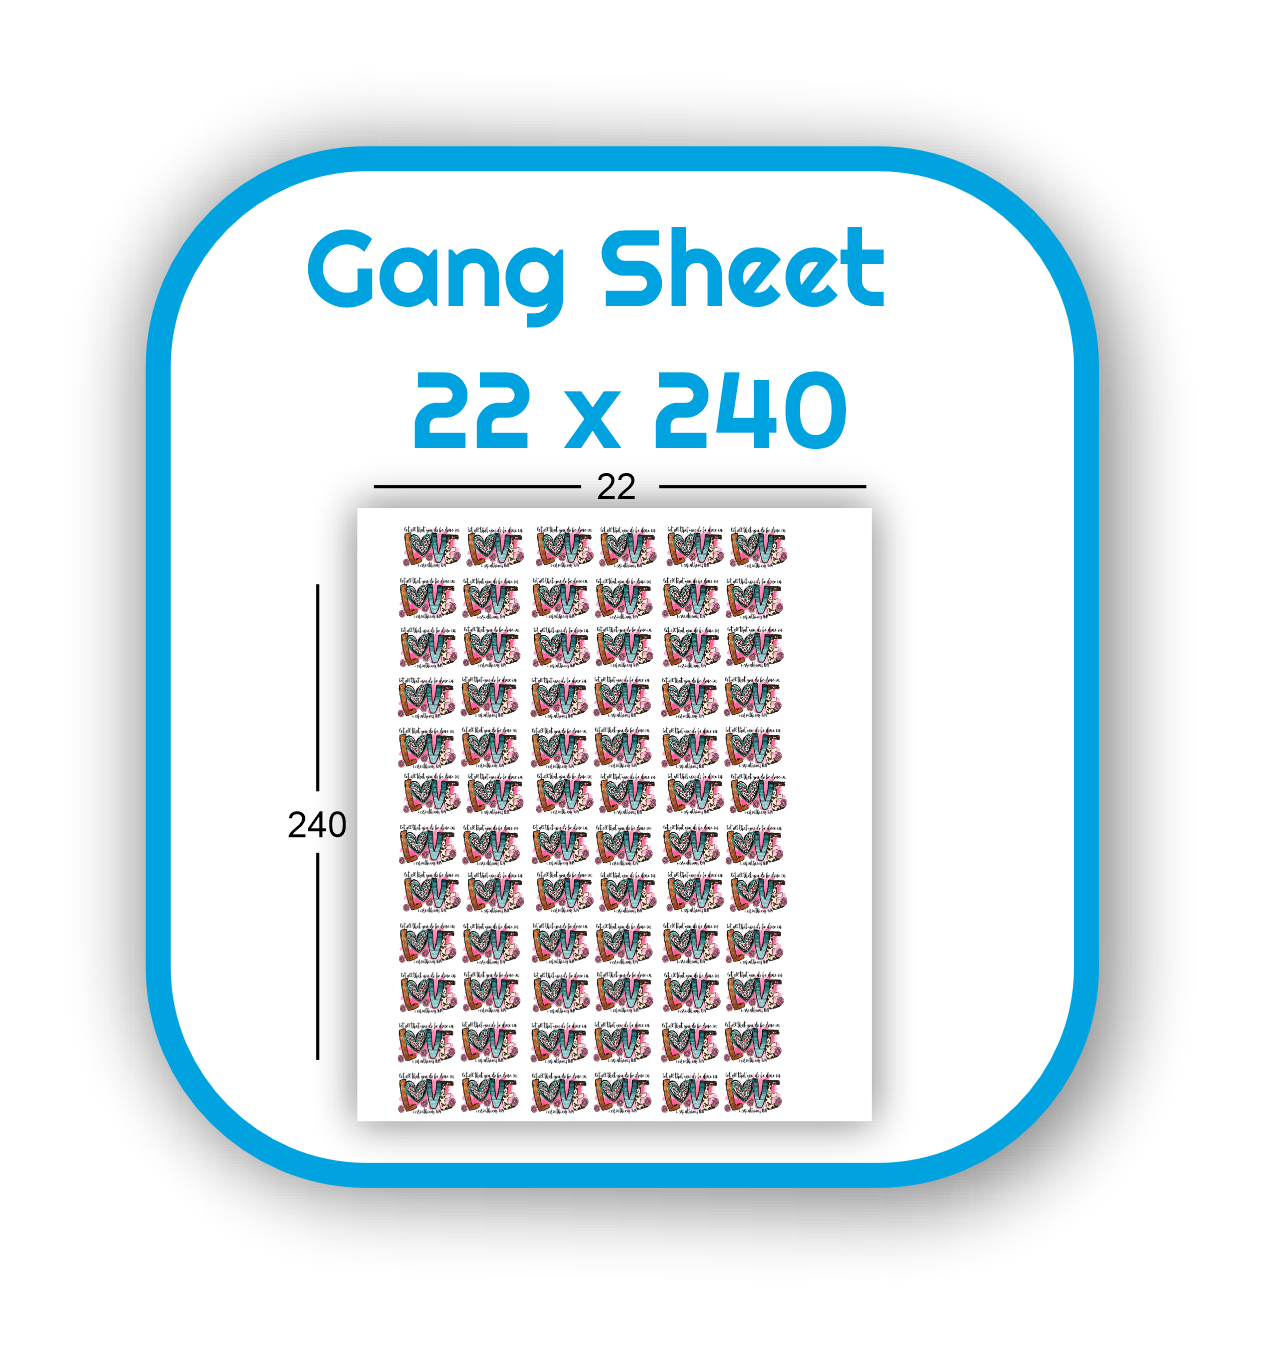 gang-sheet-22x240